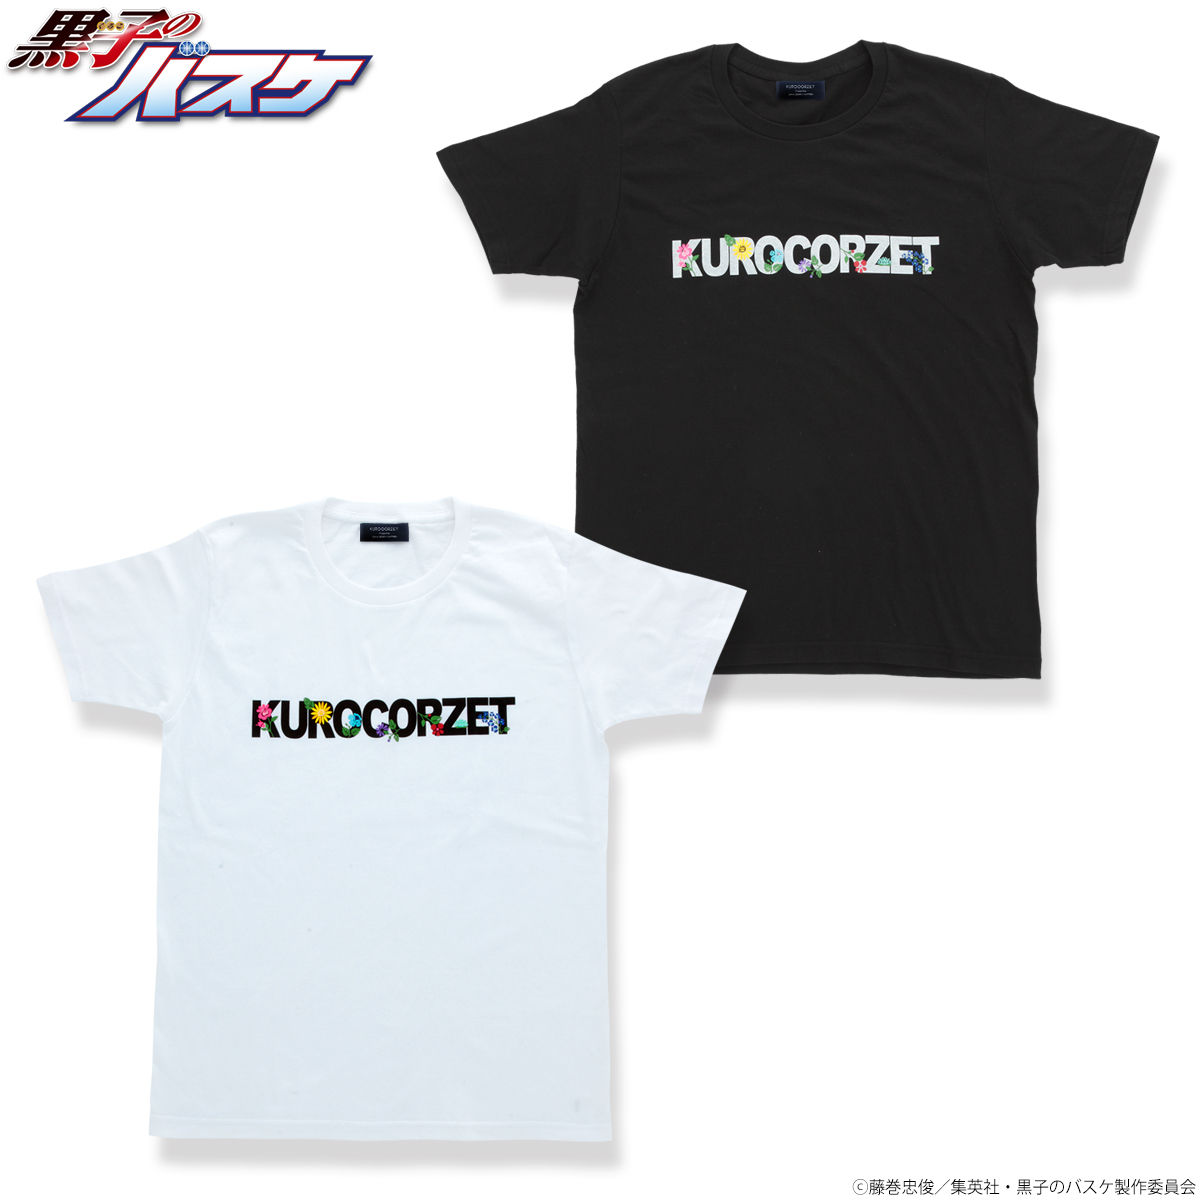 黒子のバスケ Kurocorzet Tシャツ 黒子のバスケ 趣味 コレクション バンダイナムコグループ公式通販サイト